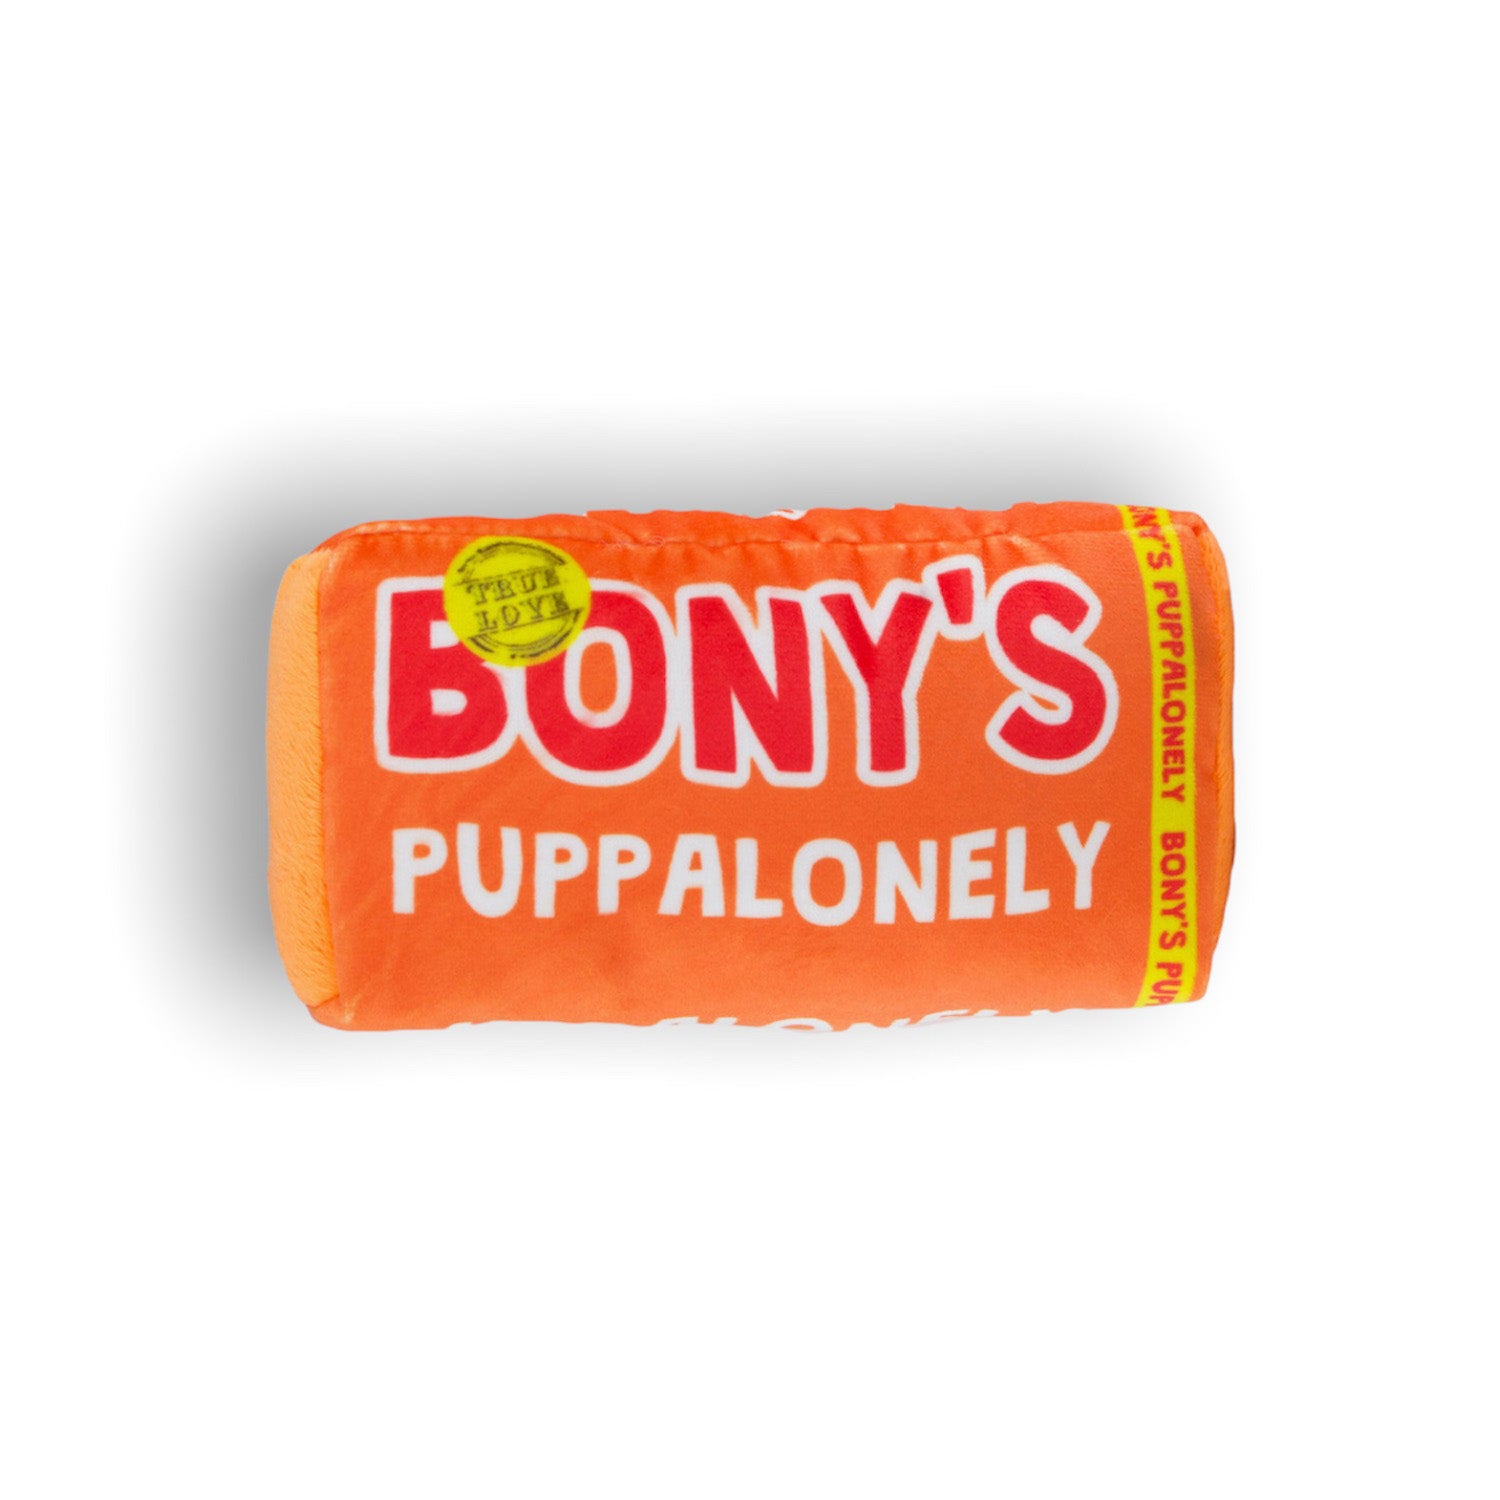 Bony's Puppalonely